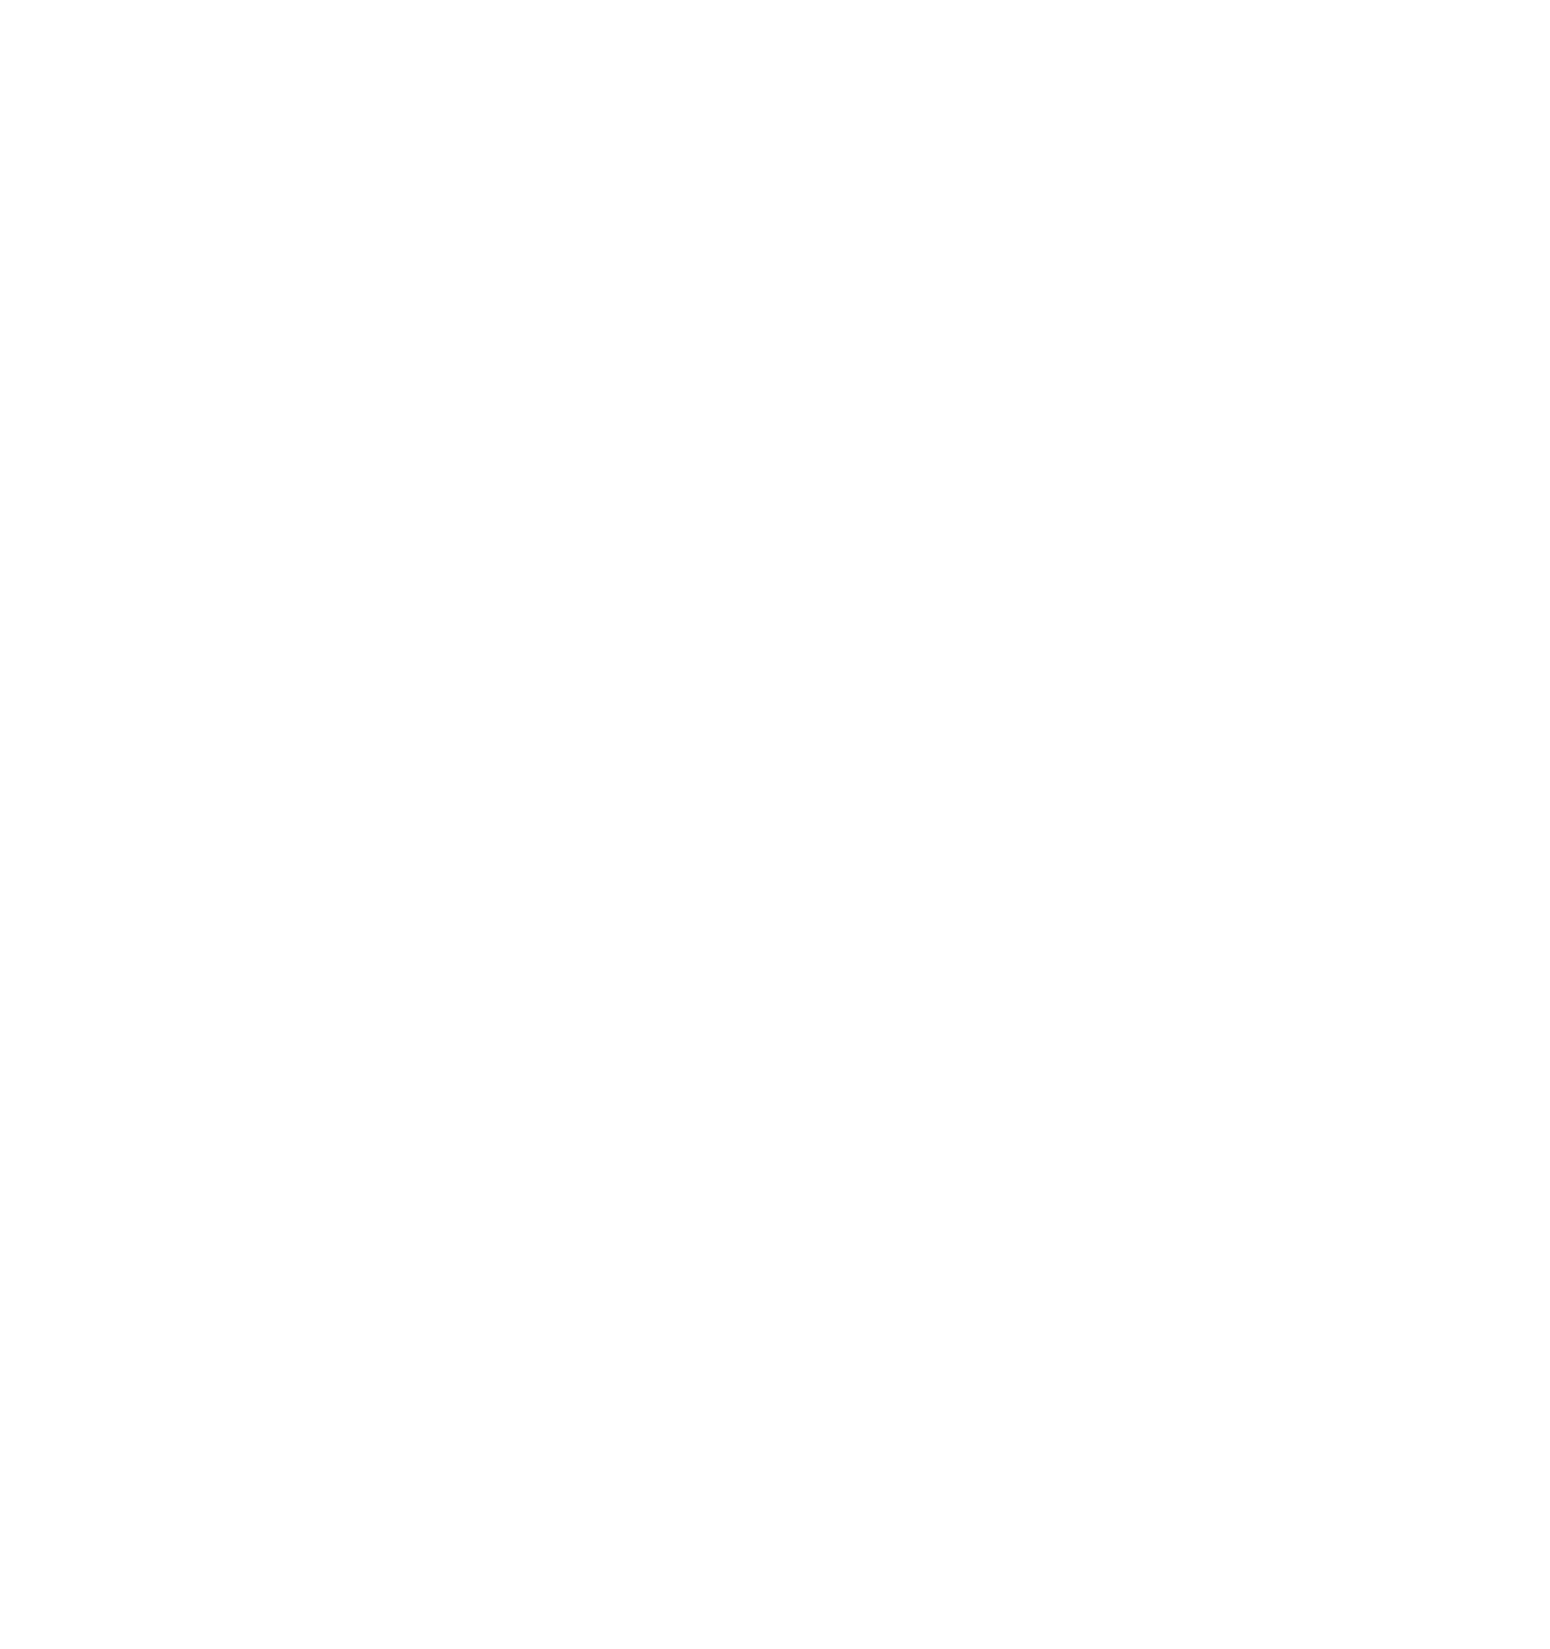 Scholar Rock Holding logo pour fonds sombres (PNG transparent)